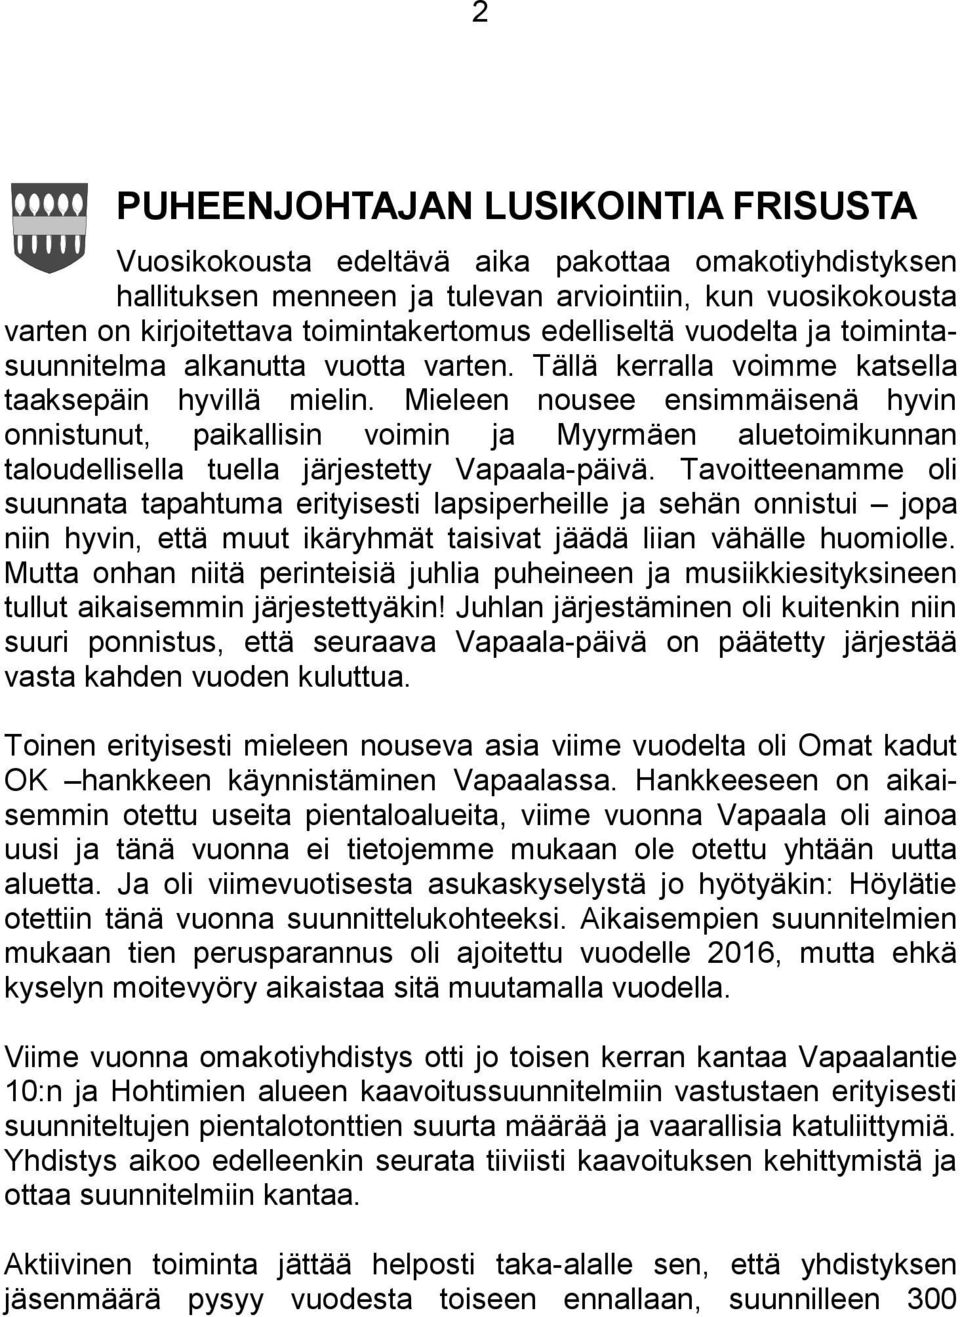 Mieleen nousee ensimmäisenä hyvin onnistunut, paikallisin voimin ja Myyrmäen aluetoimikunnan taloudellisella tuella järjestetty Vapaala-päivä.